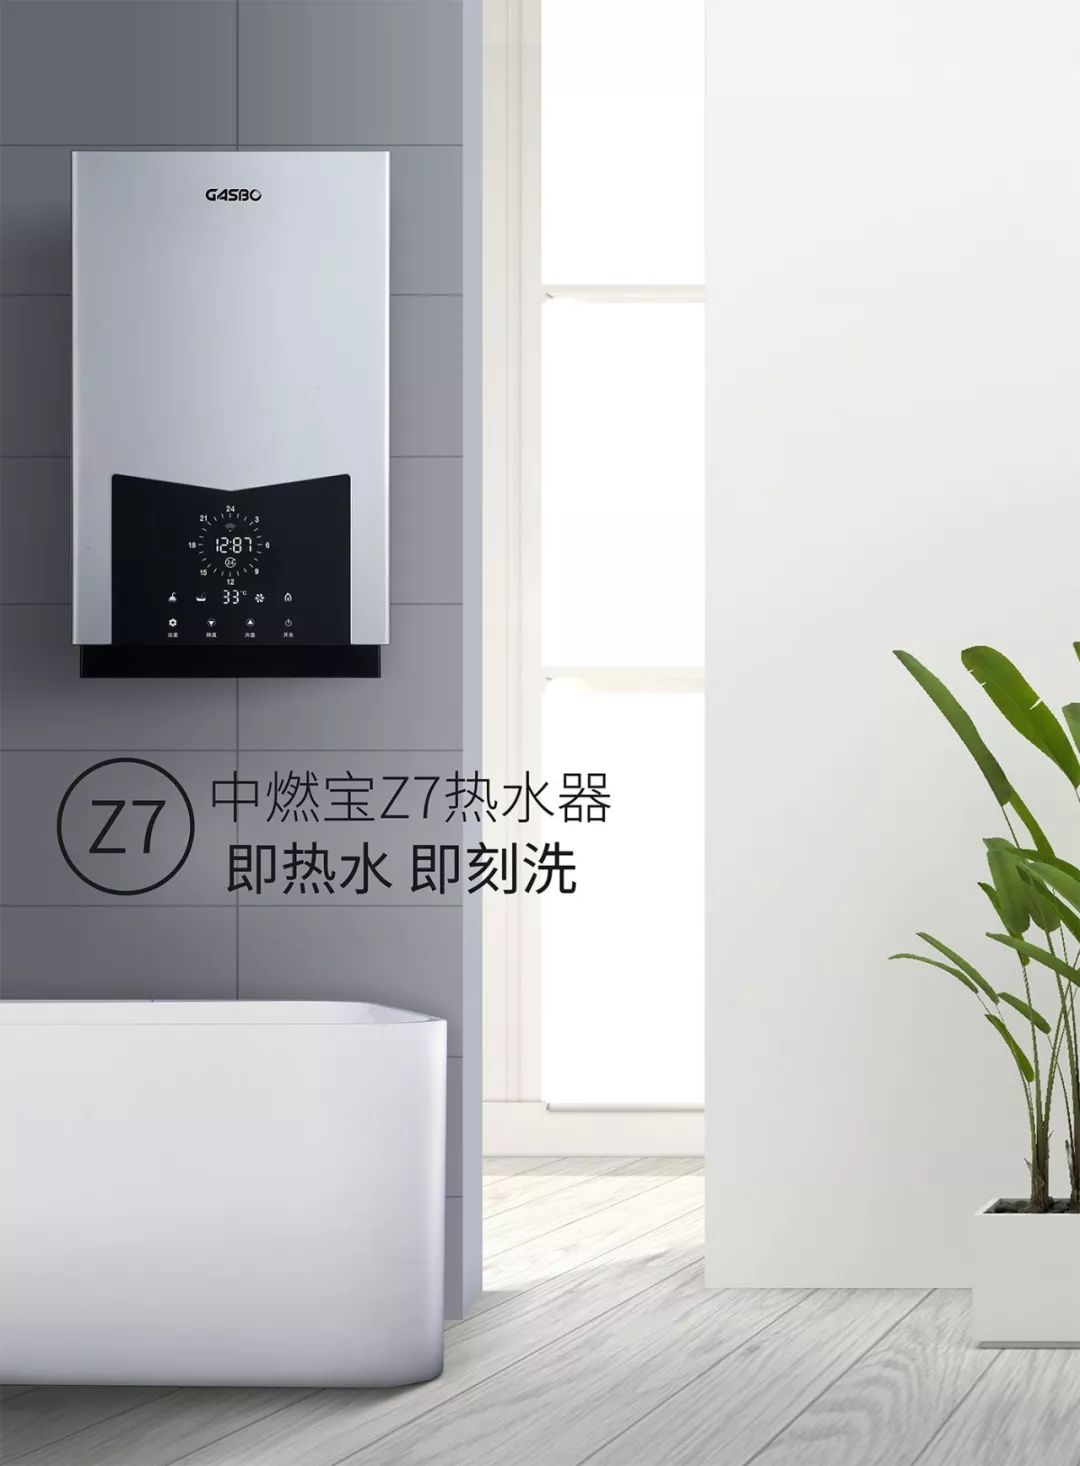 拯救冬天的“洗澡困难症”丨中燃宝Z7零冷水热水器上市啦！